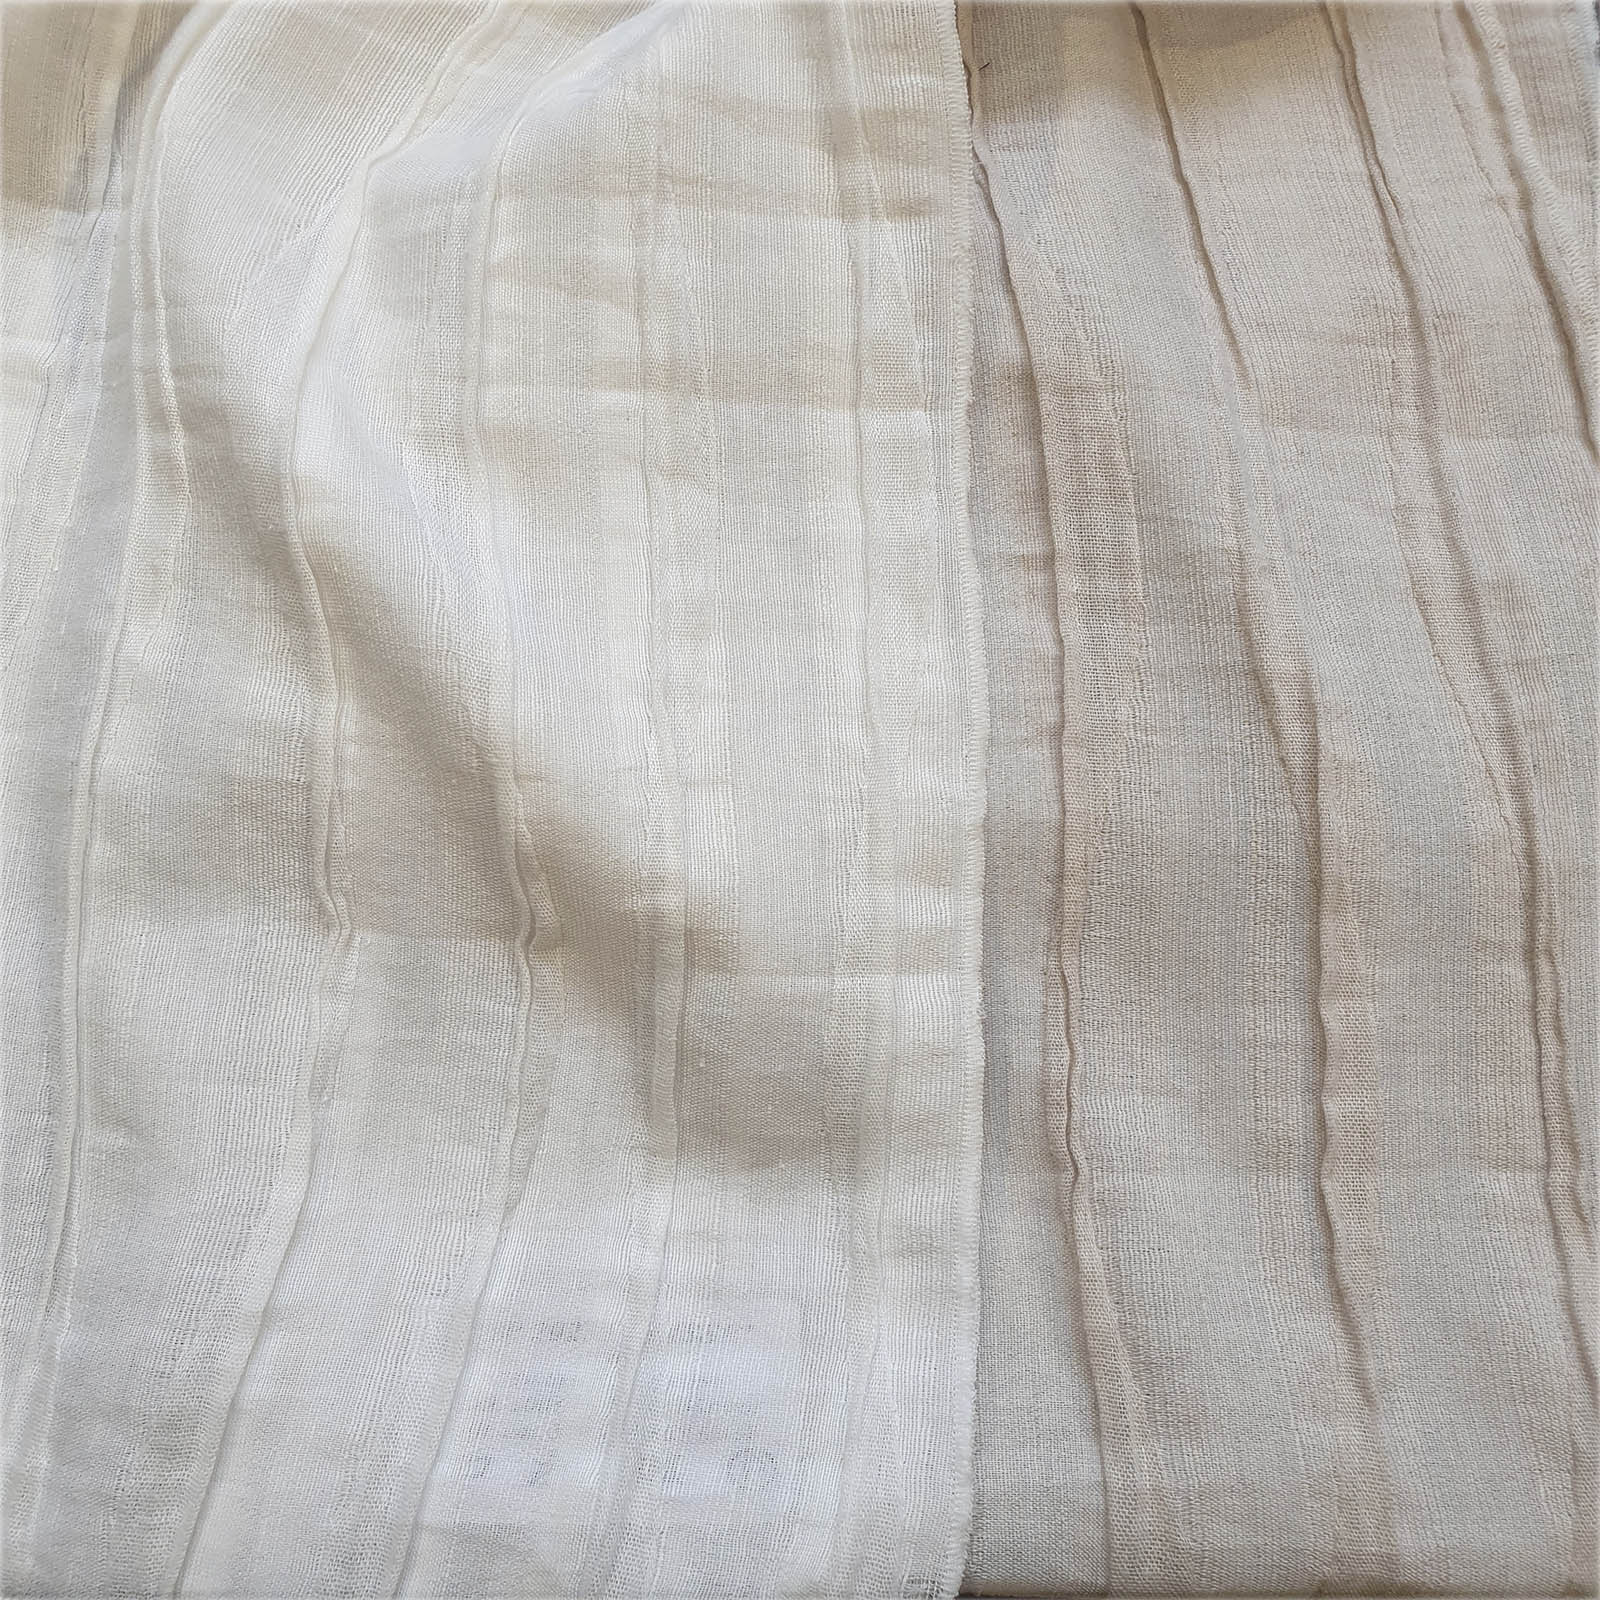 Tessuto semitrasparente per cuscini e tendaggi. Forniture per arredamento, editoria tessile, GDO e moda